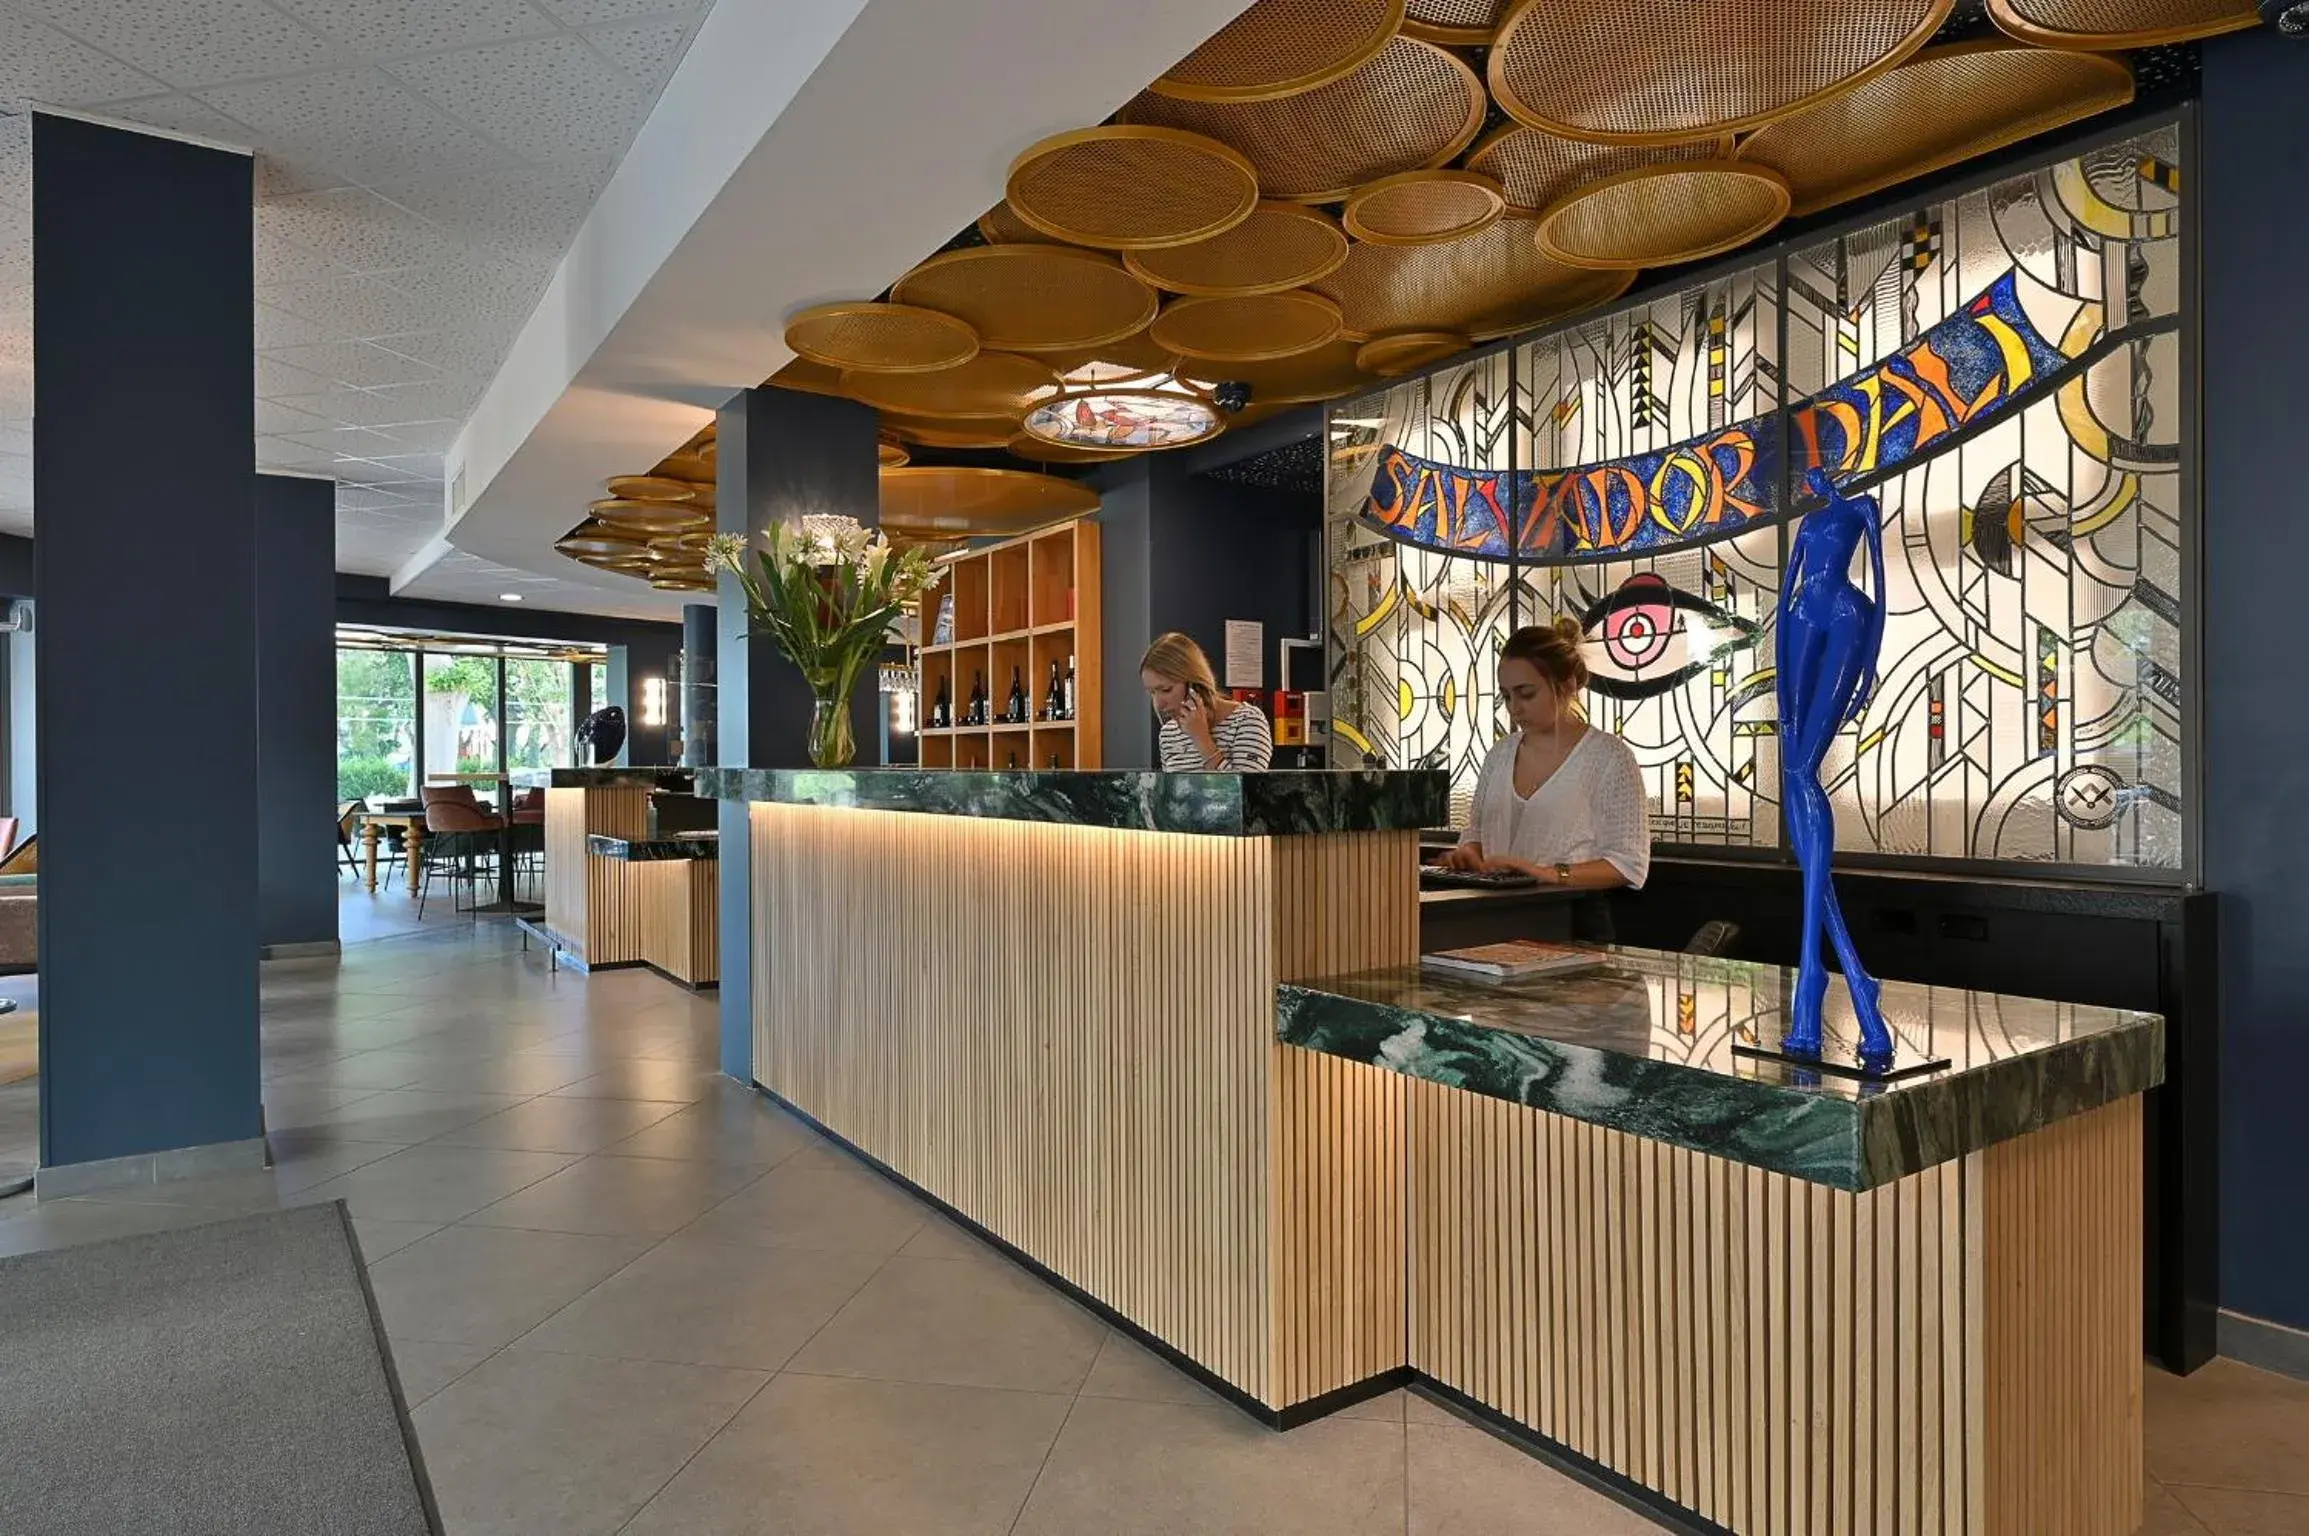 Lobby or reception in Dali Hotel